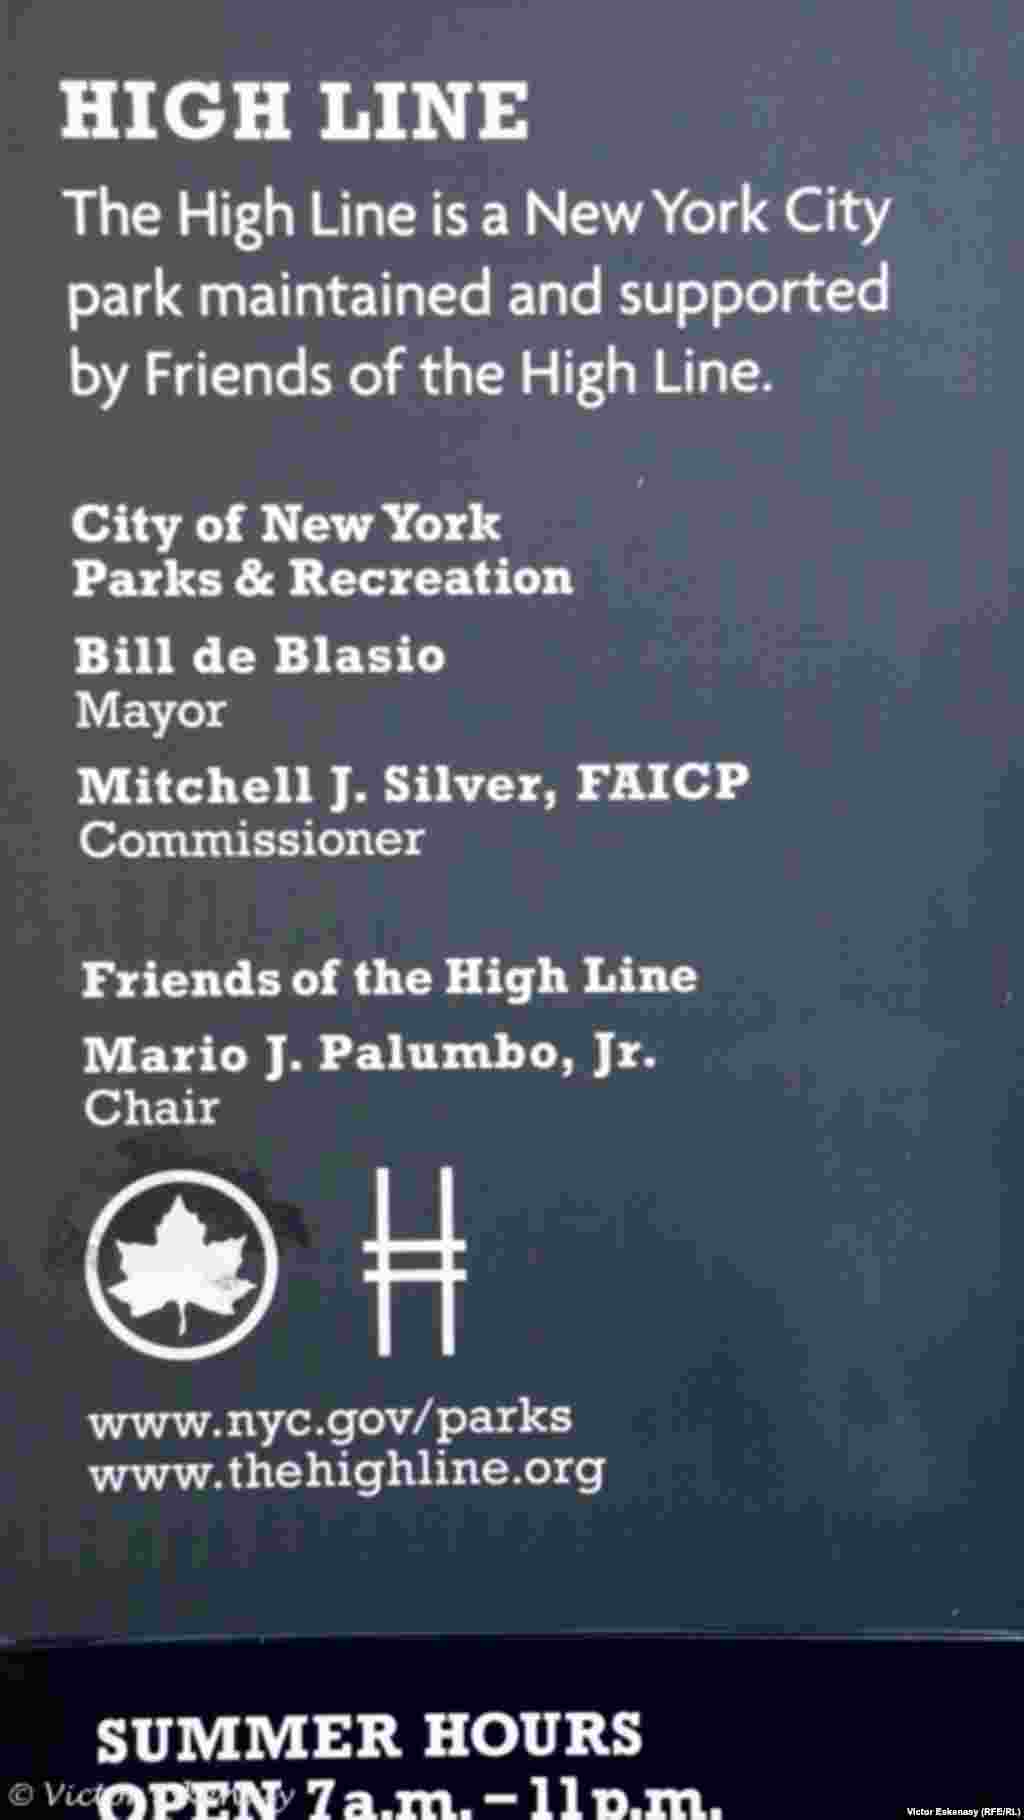 &bdquo;High Line&rdquo; este un parc al New York City întreținut și susținut de Prietenii High Line-ului&rdquo;...